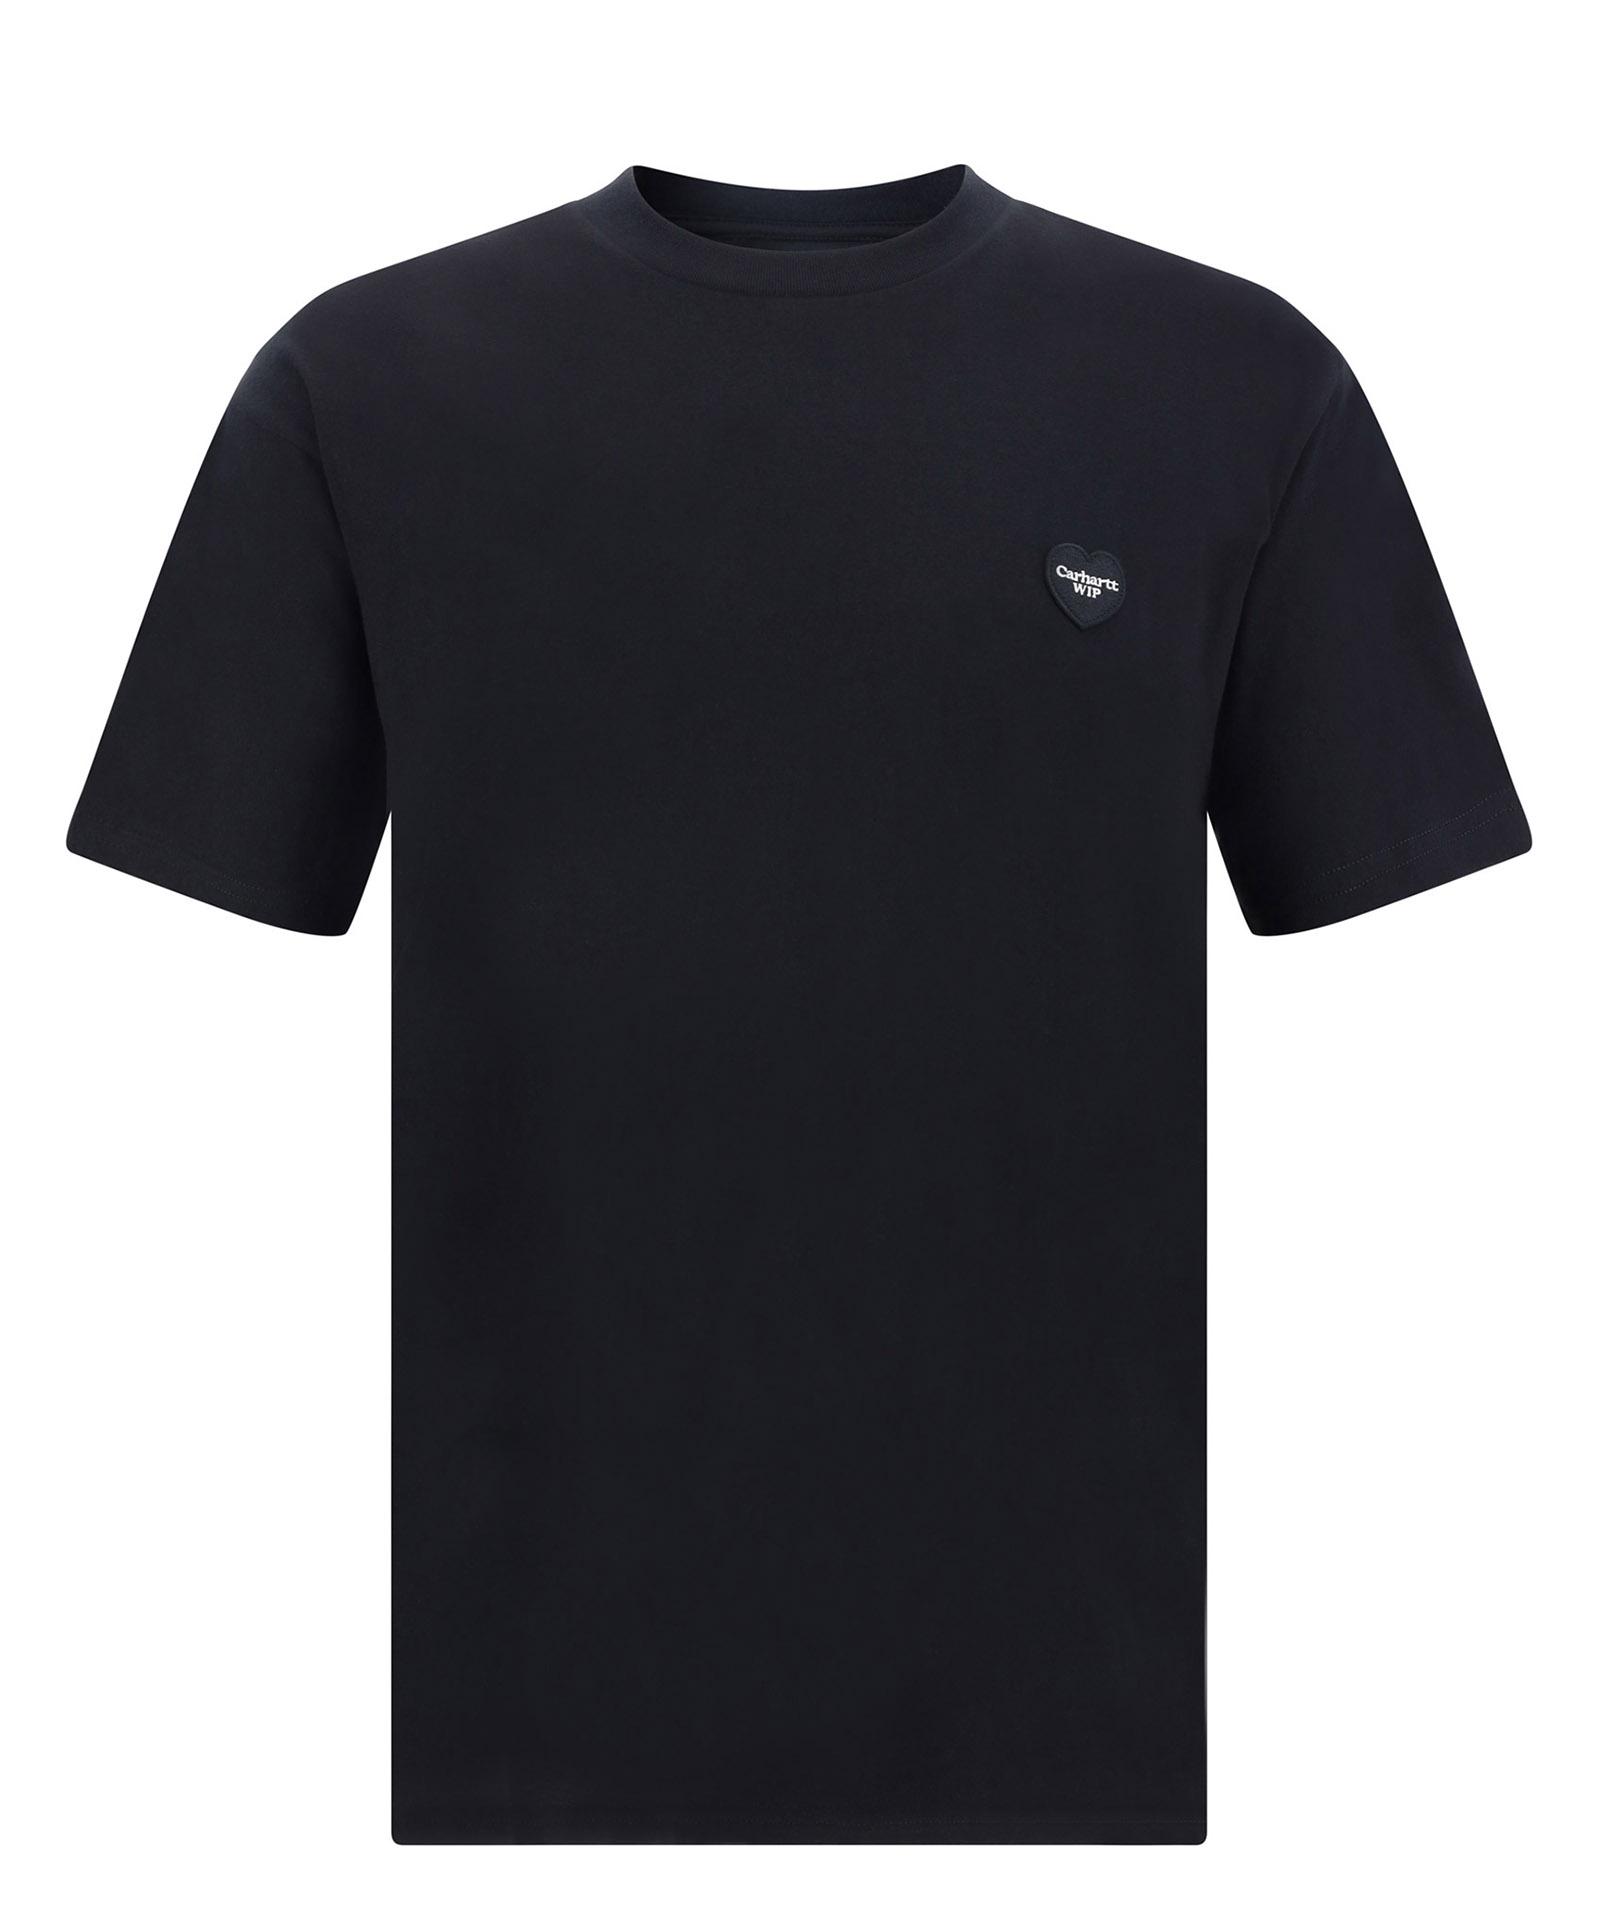 Carhartt WIP Double Heart T-shirt in Black for Men | Lyst